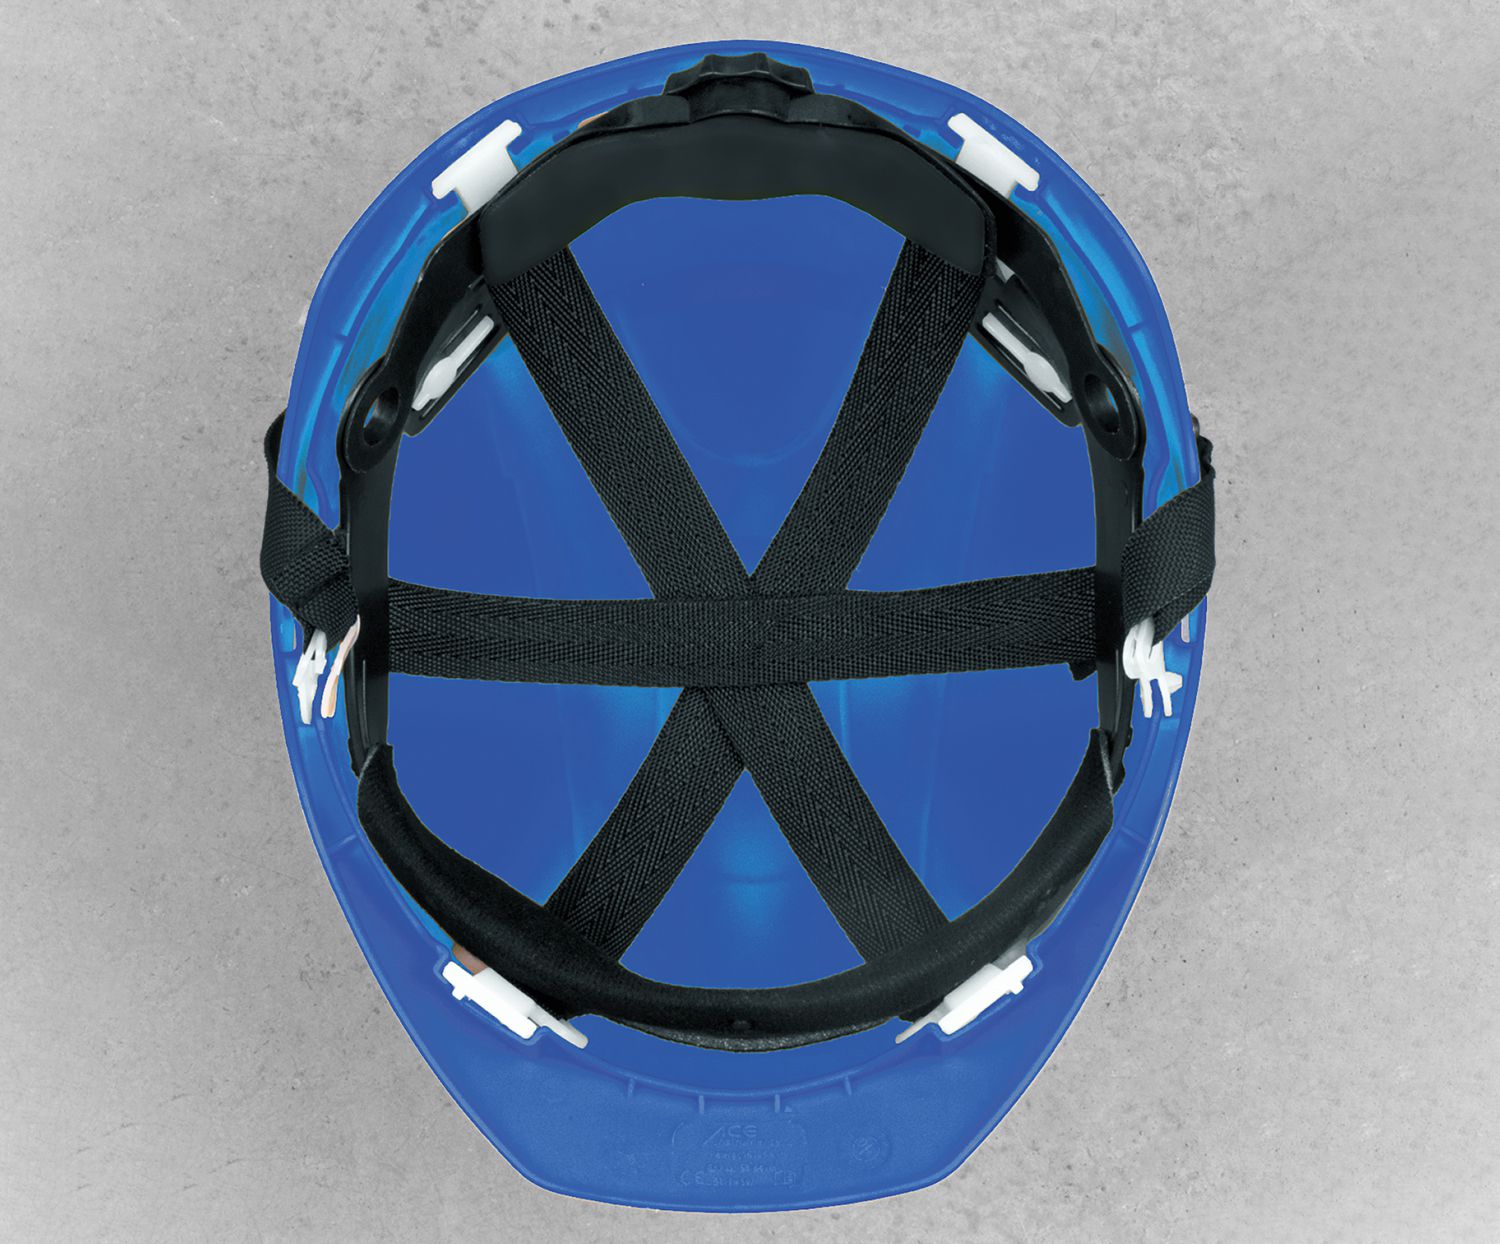 10 ACE Patera Bauhelme - Robuste Schutzhelme für Bau & Industrie - EN 397 - mit einstellbarer Belüftung - Blau